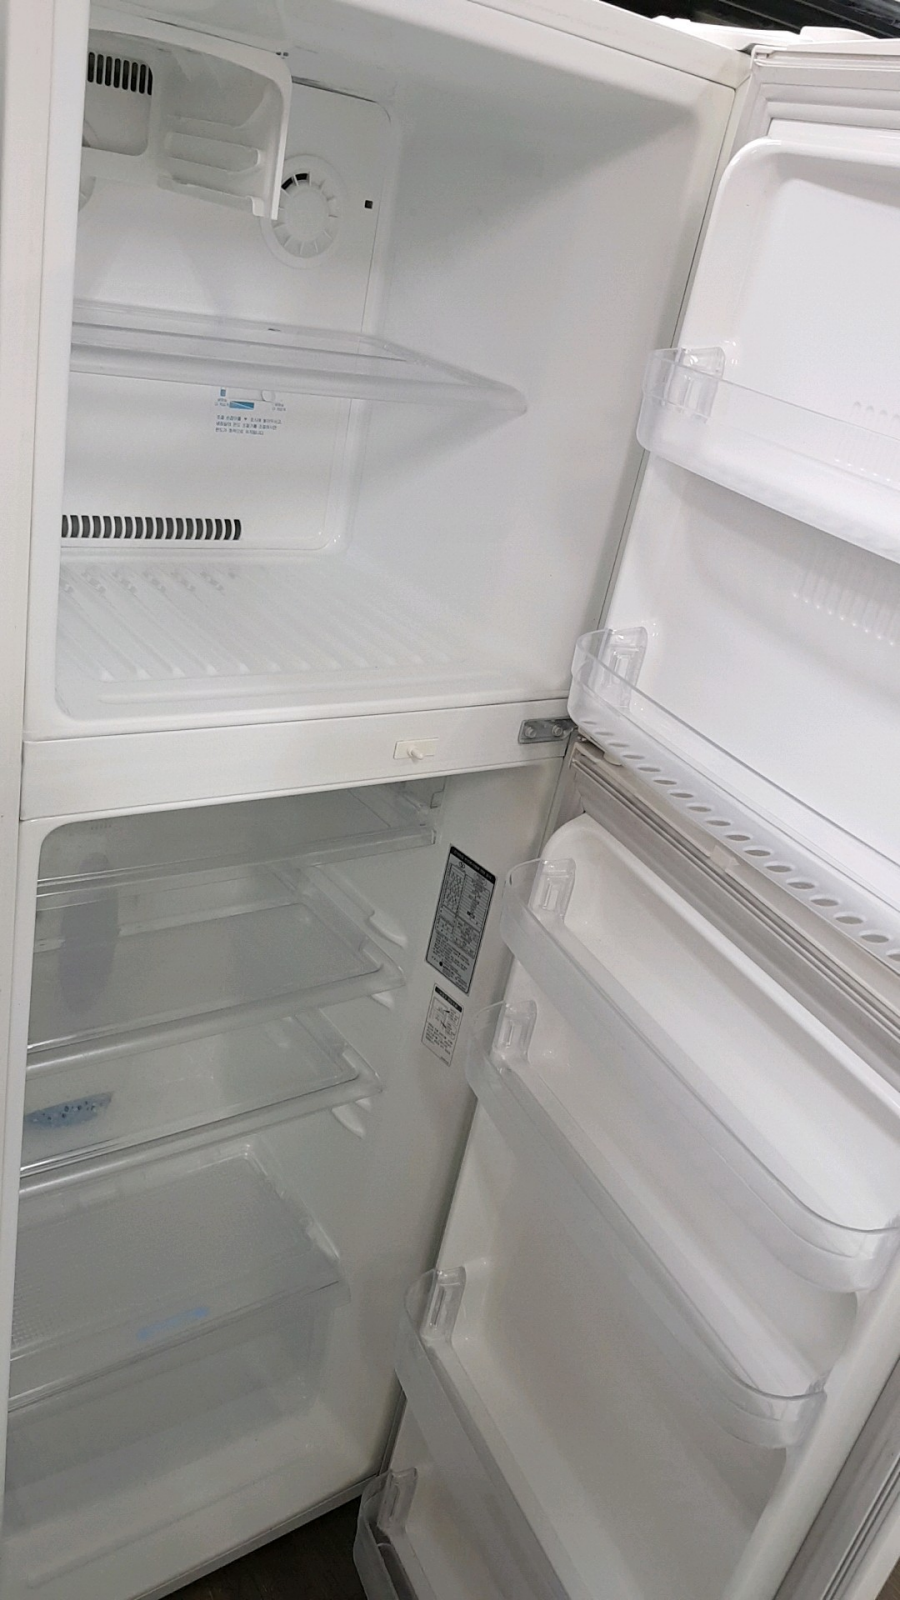 LG 냉장고